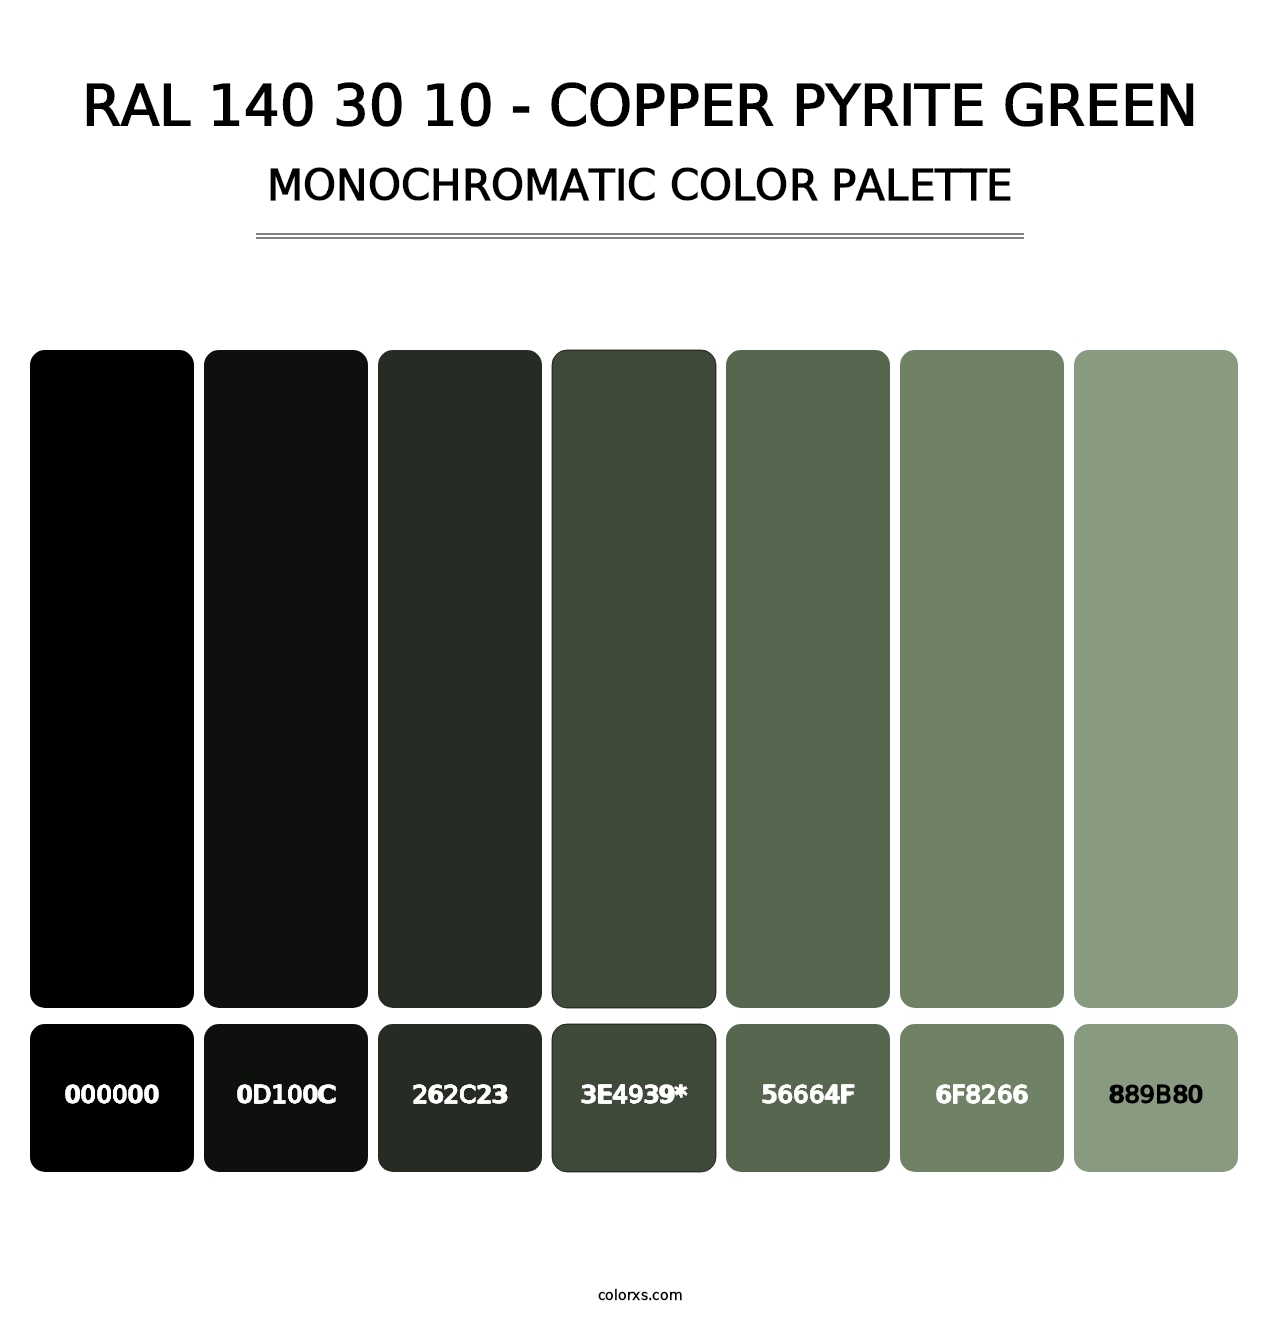 RAL 140 30 10 - Copper Pyrite Green - Monochromatic Color Palette